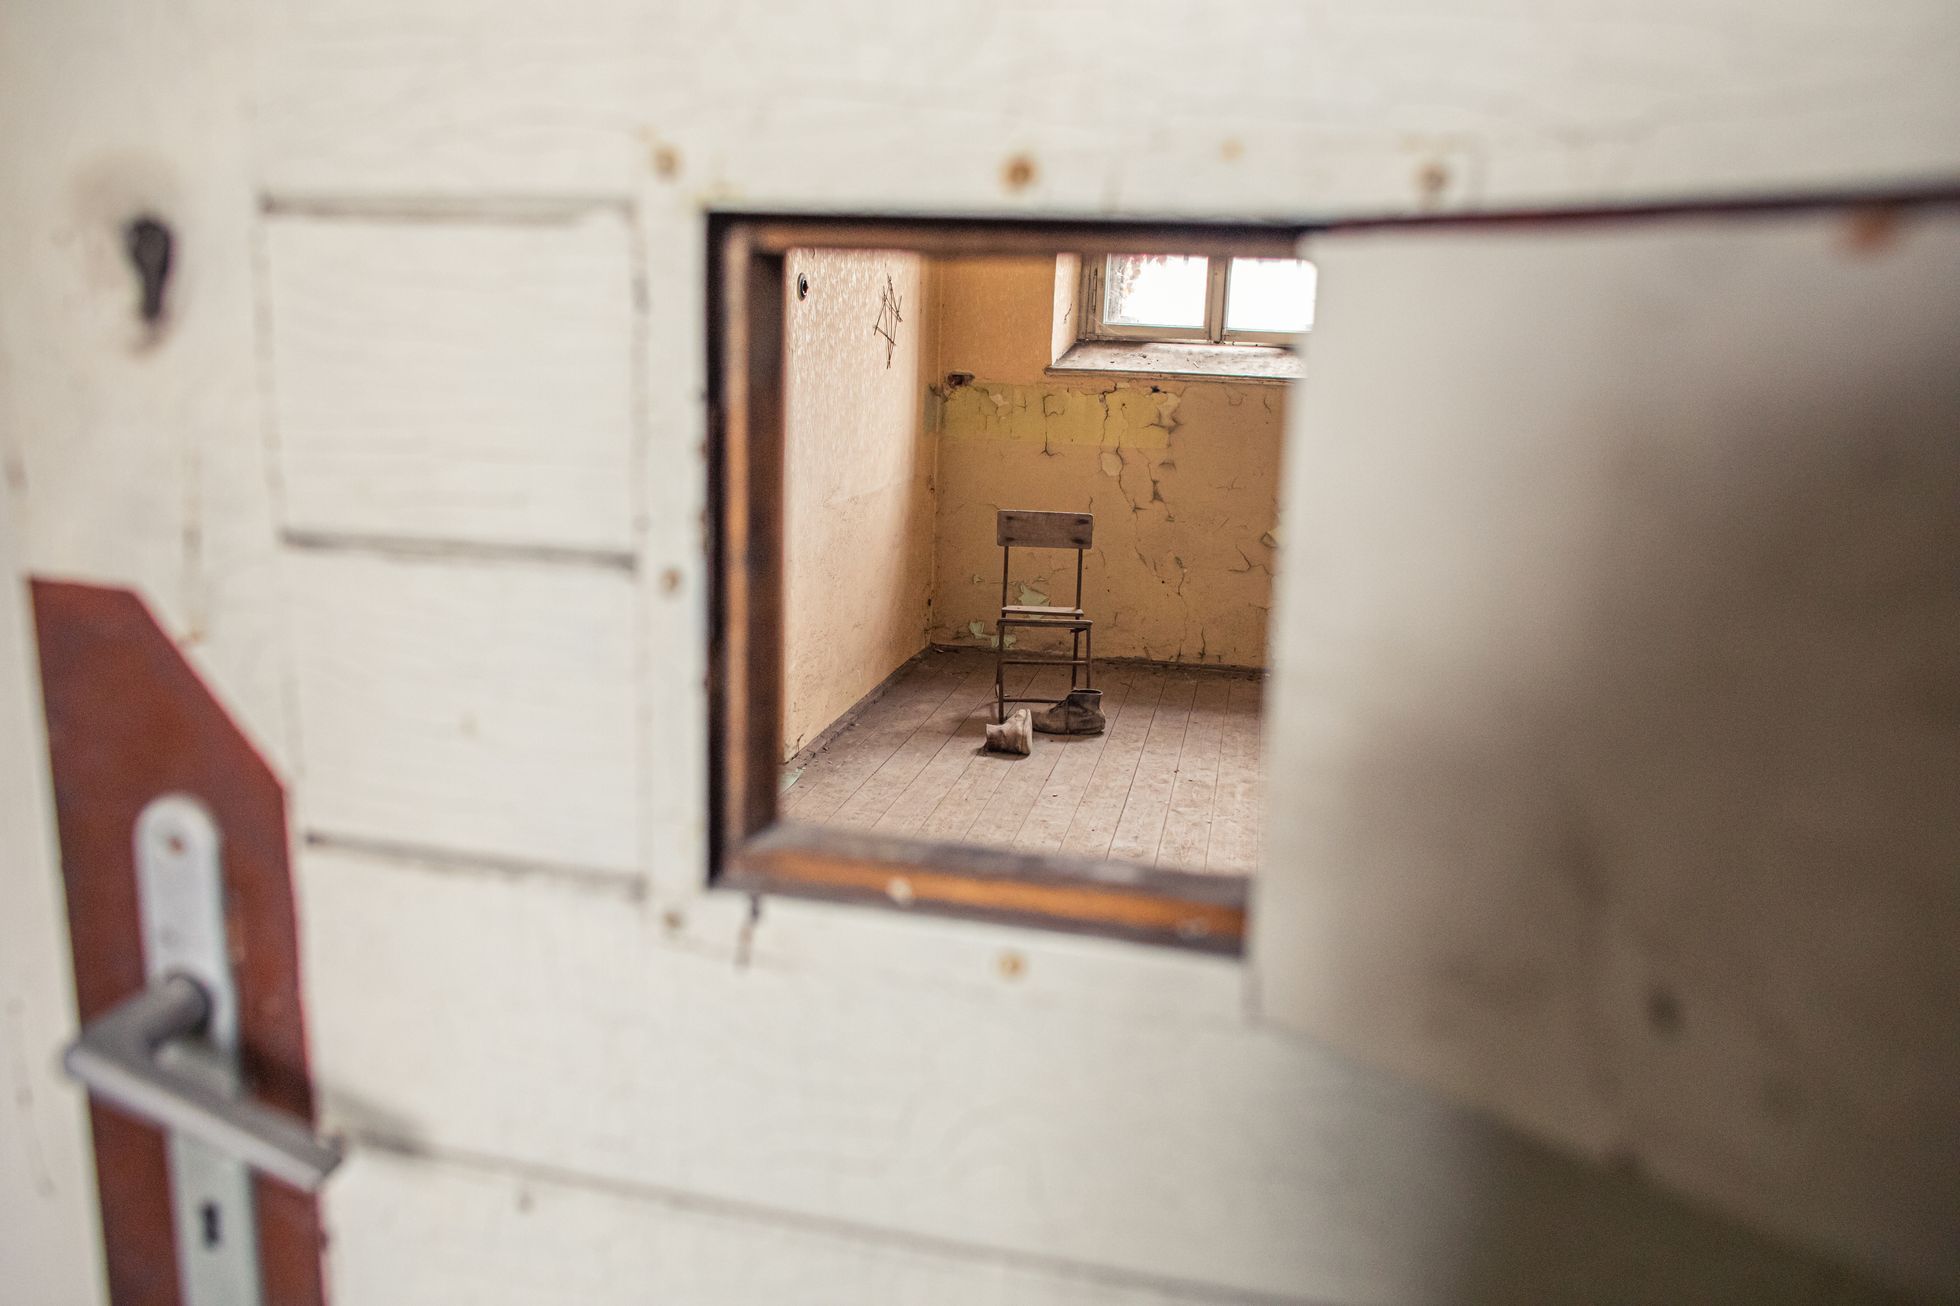 Pohled do cely v bývalé věznici v Uherském Hradišti.